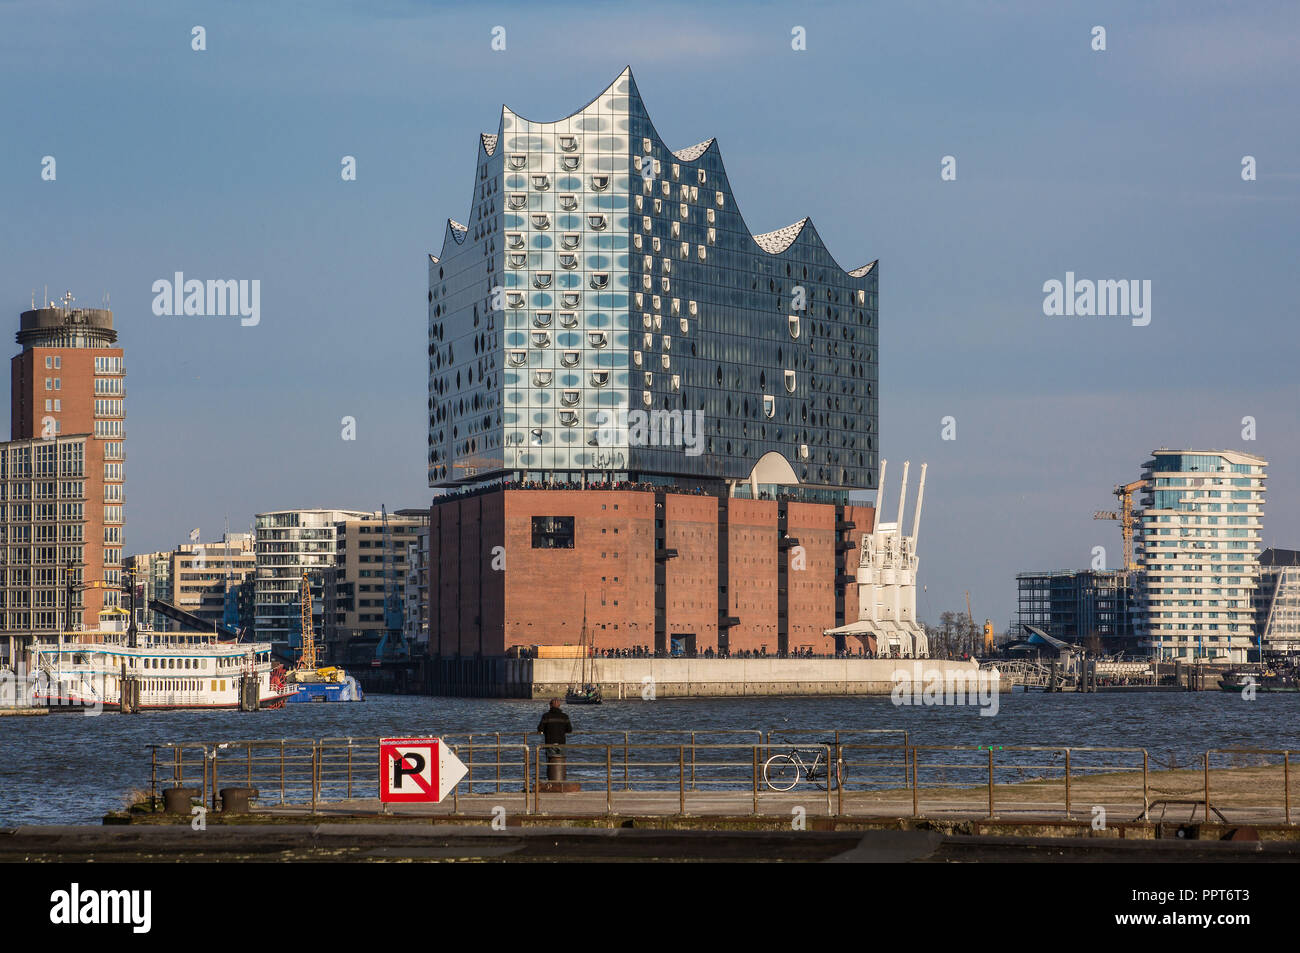 Amburgo, Elbphilharmonie, Fernsicht von Südwesten, Entwurf Herzog & de Meuron, erbaut 2007-2016, Backsteinsockel gebildet vom 1963 erbauten ehemaligen Foto Stock